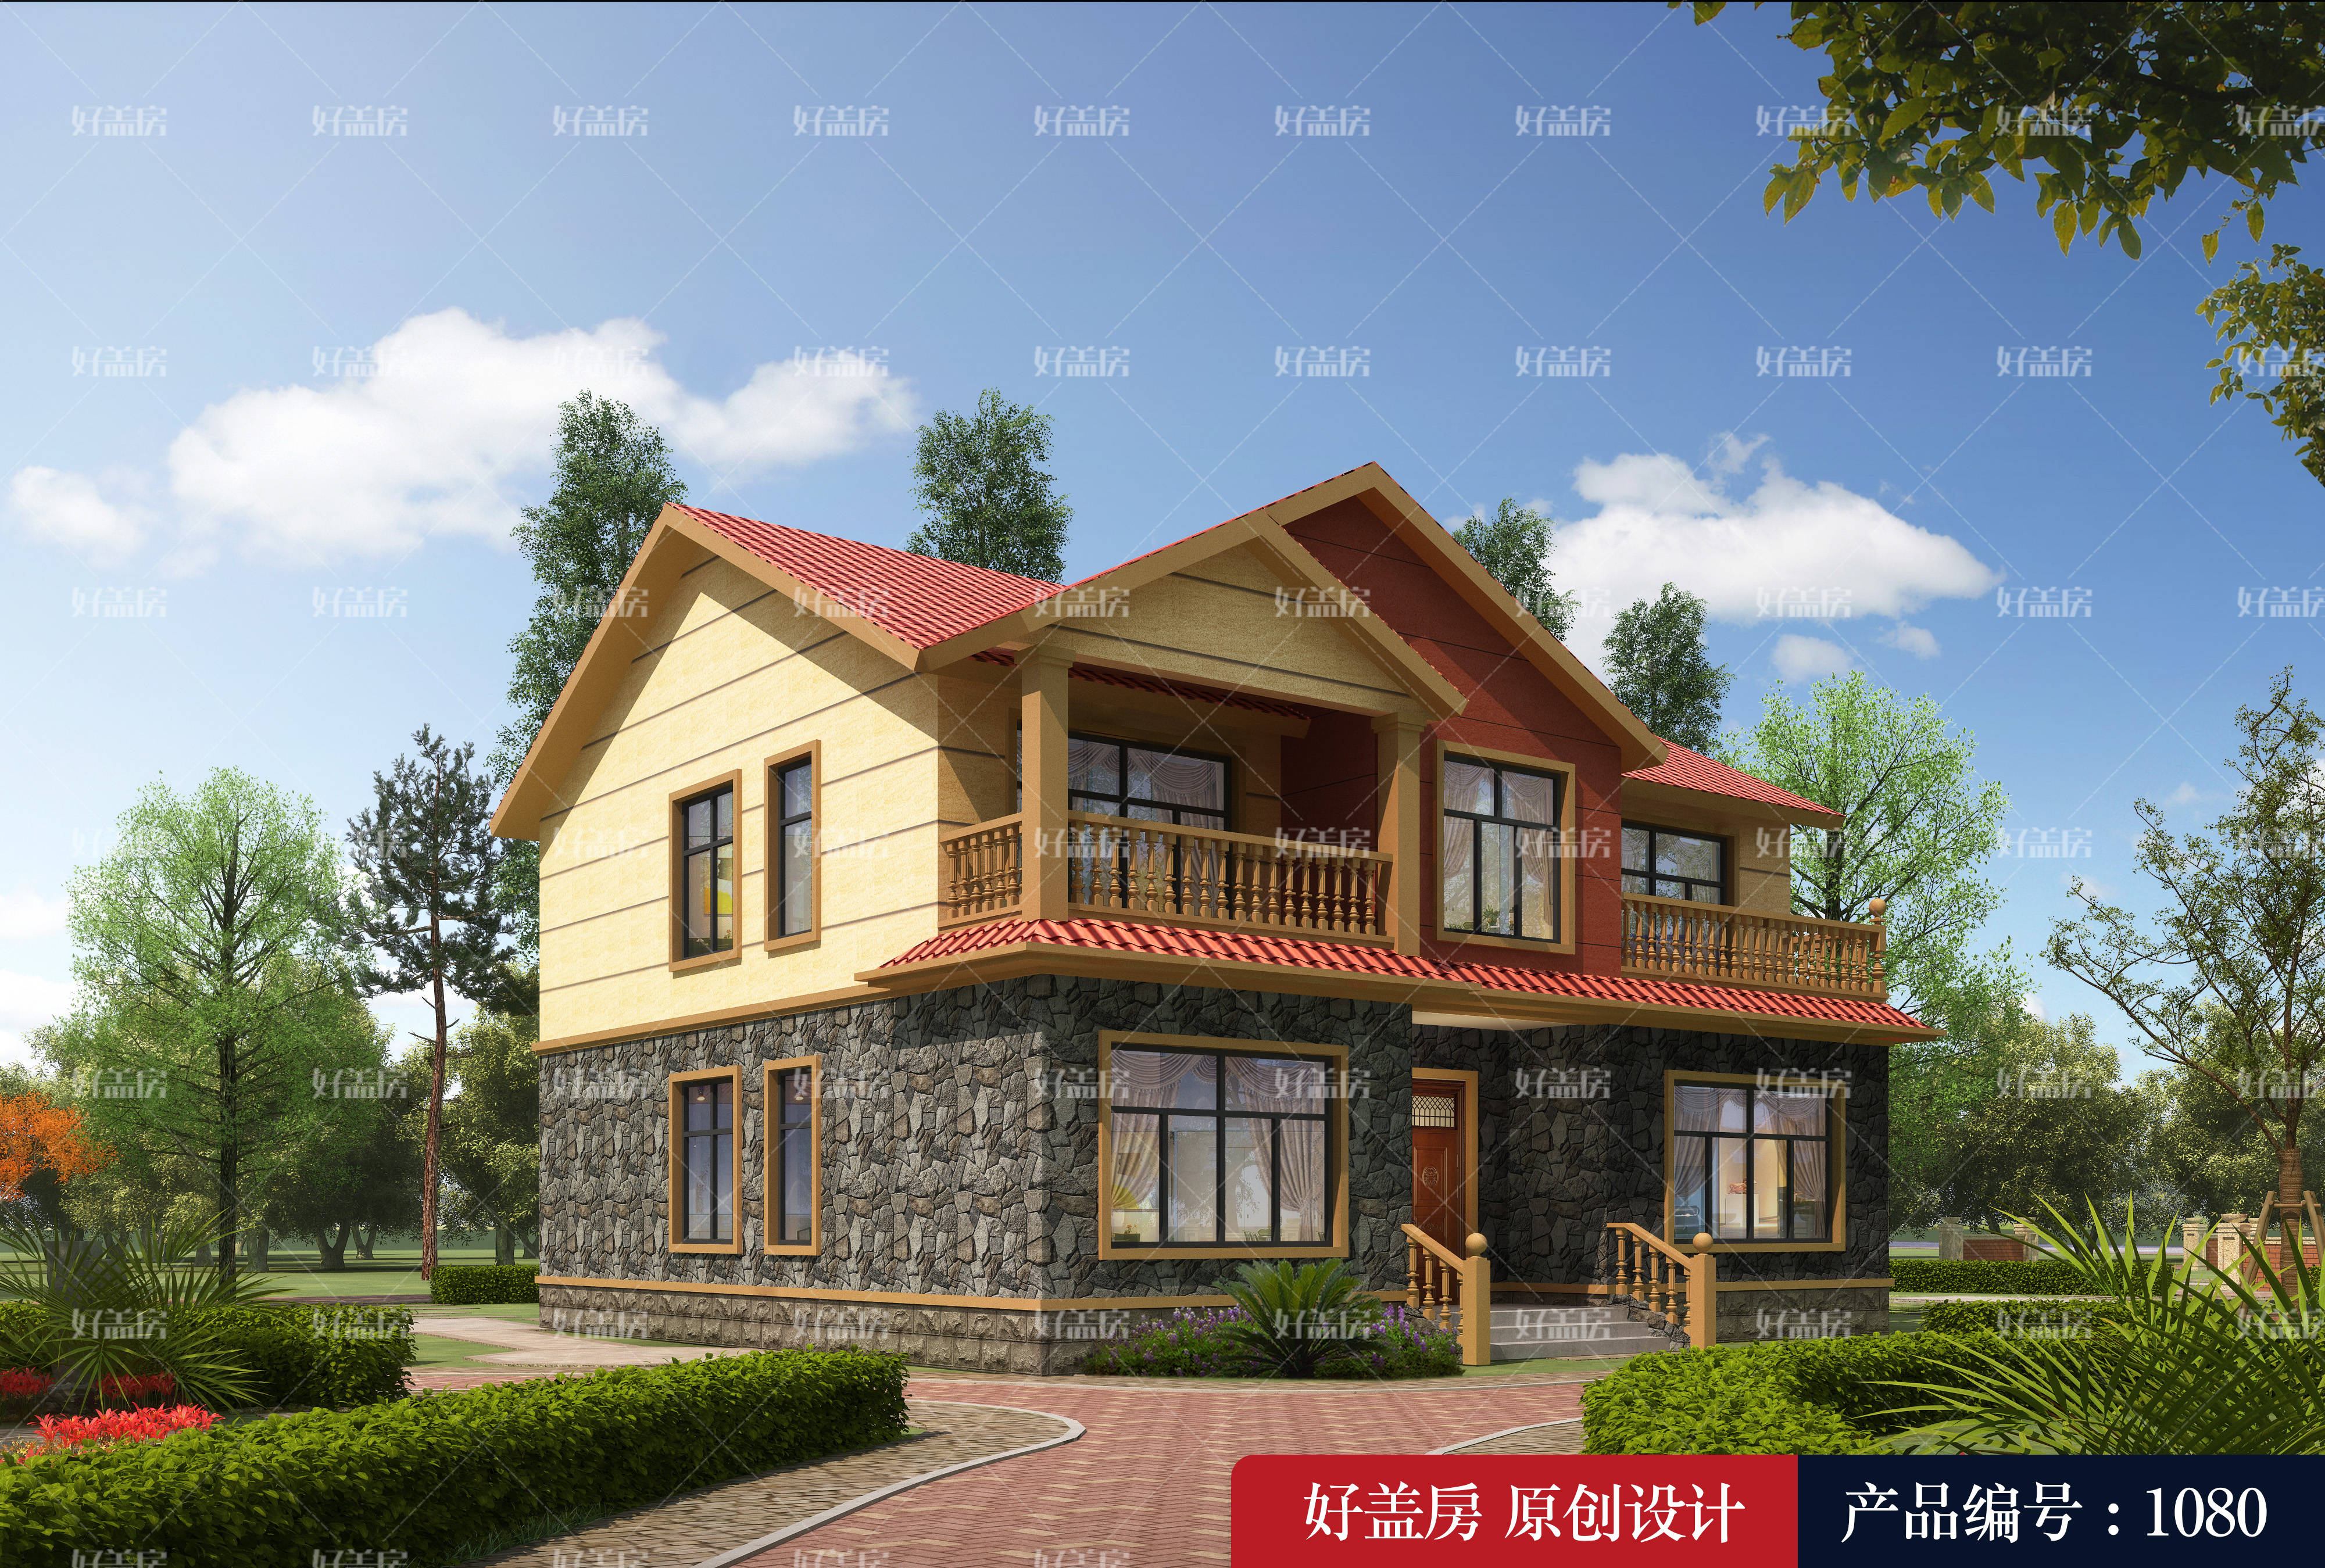 
新农村住宅设计图纸-jbo竞博官网